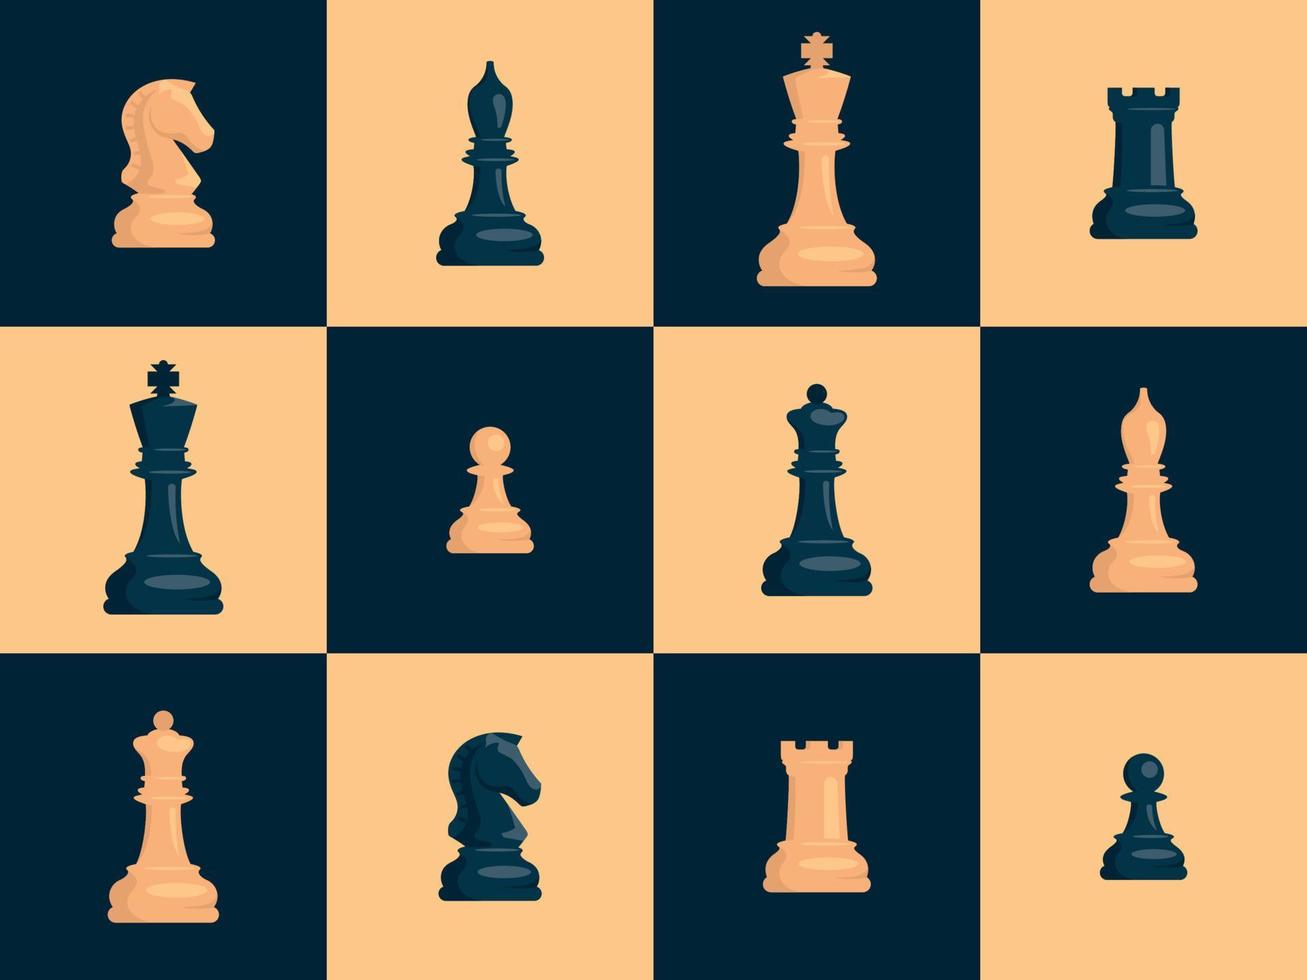 scacchi. set di pezzi degli scacchi bianchi e neri. cavaliere, torre, pedone, alfiere, re, regina. immagine vettoriale. vettore